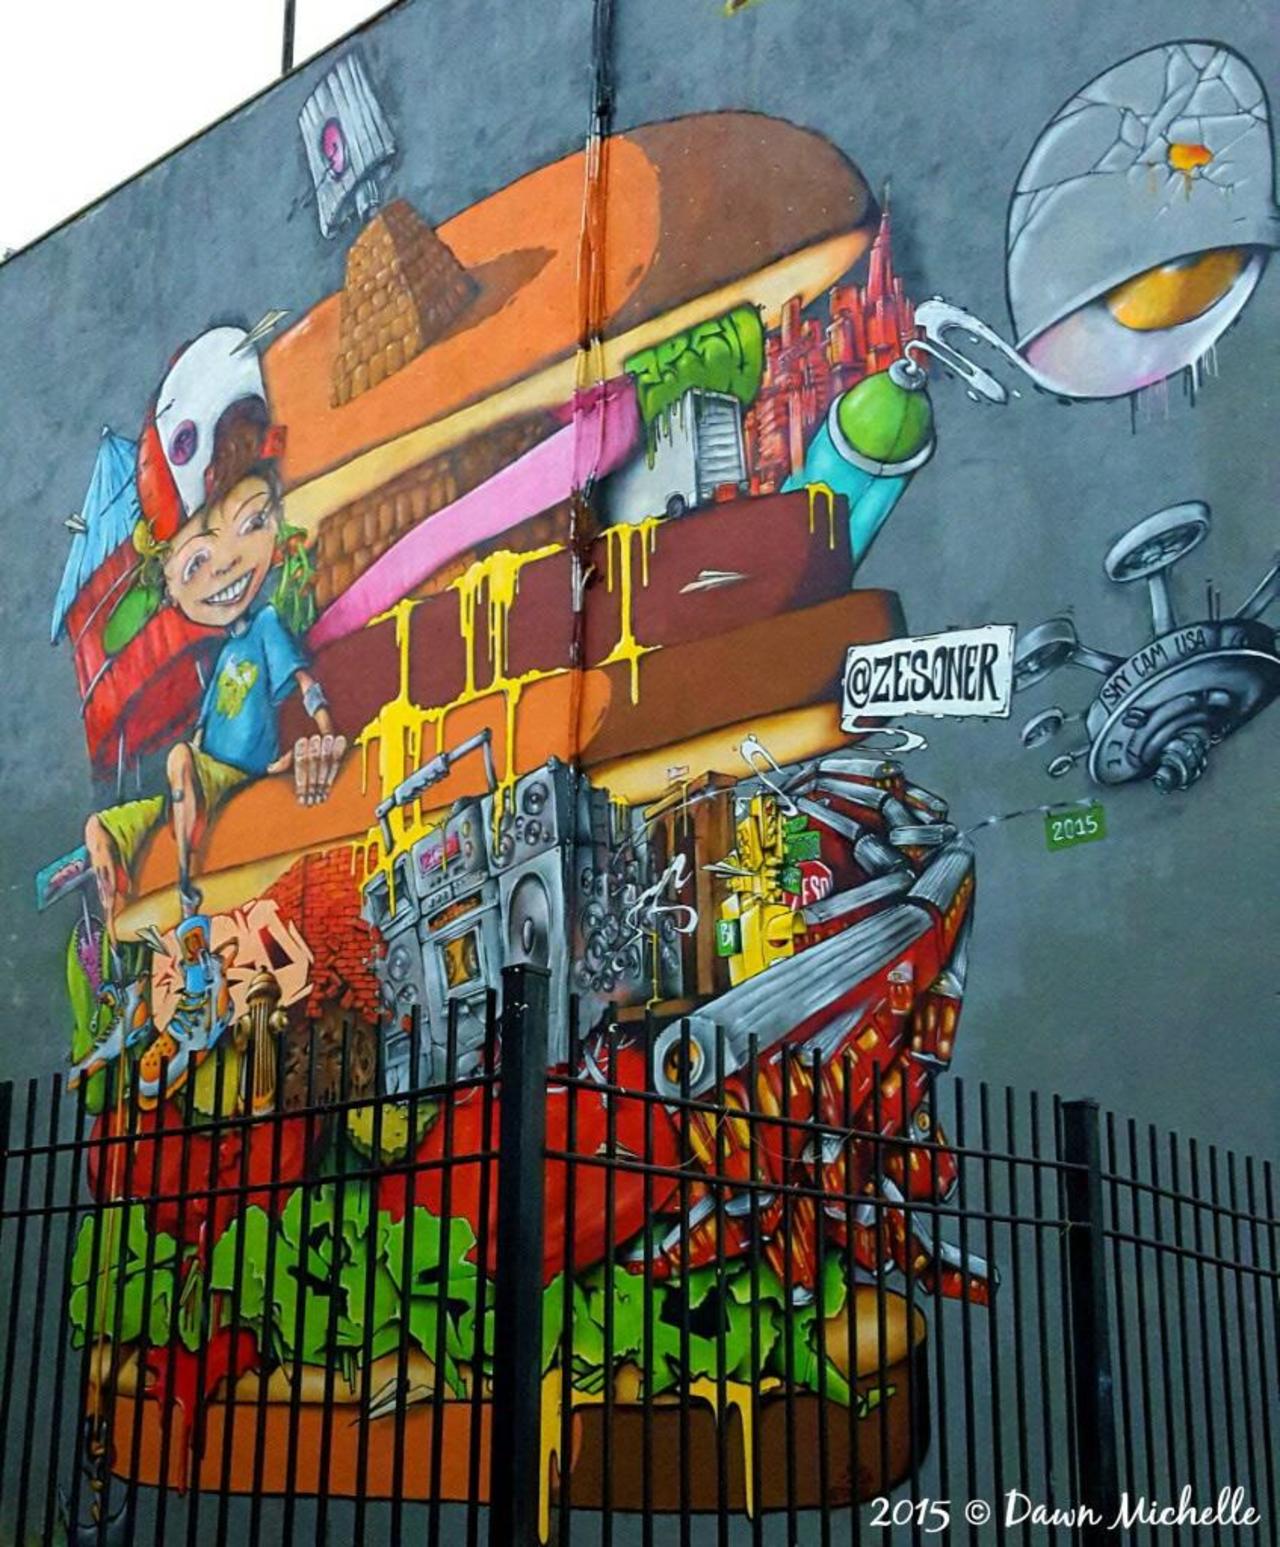 A @zesoner burger. #nyc #graffiti #streetart #art #graff @circumjacent @circumjacent @MadeInManchestr @GraffitiFeed https://t.co/WTeYoSclPx